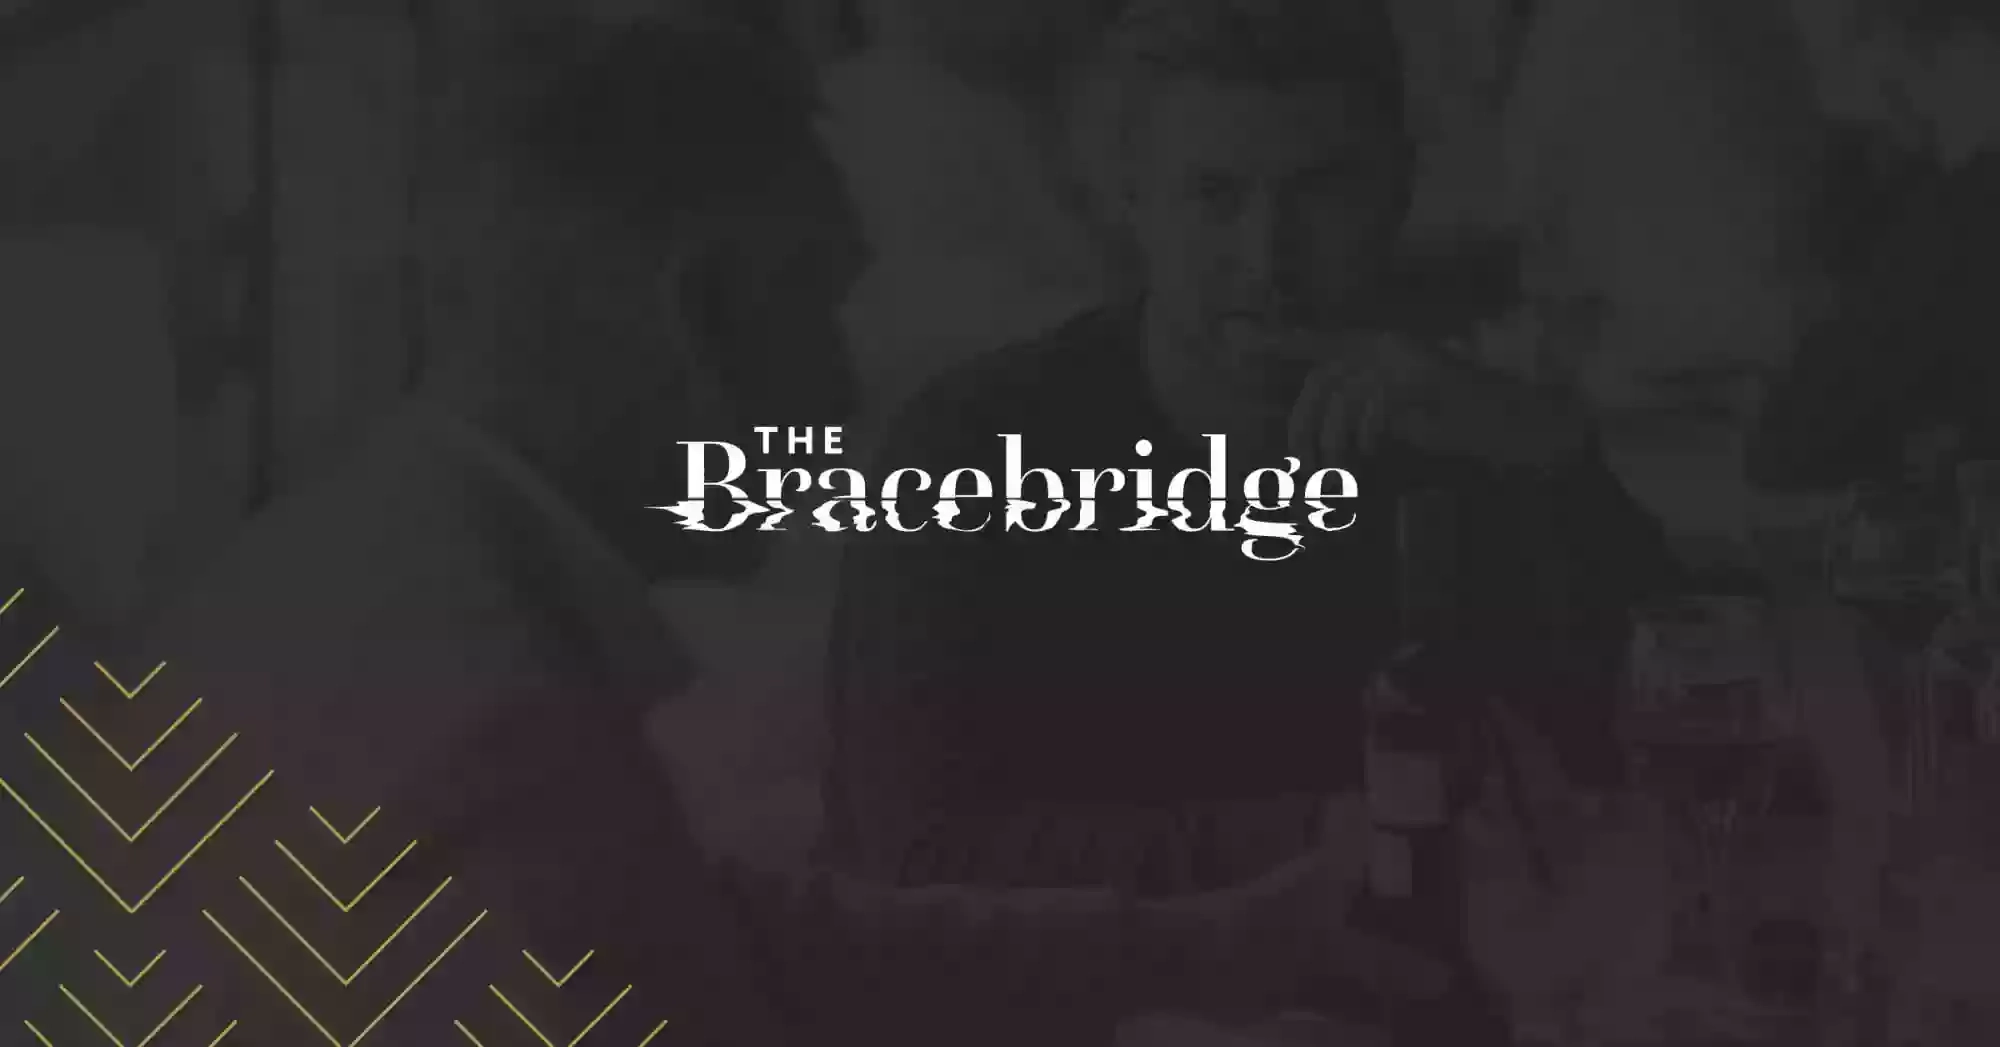 The Bracebridge